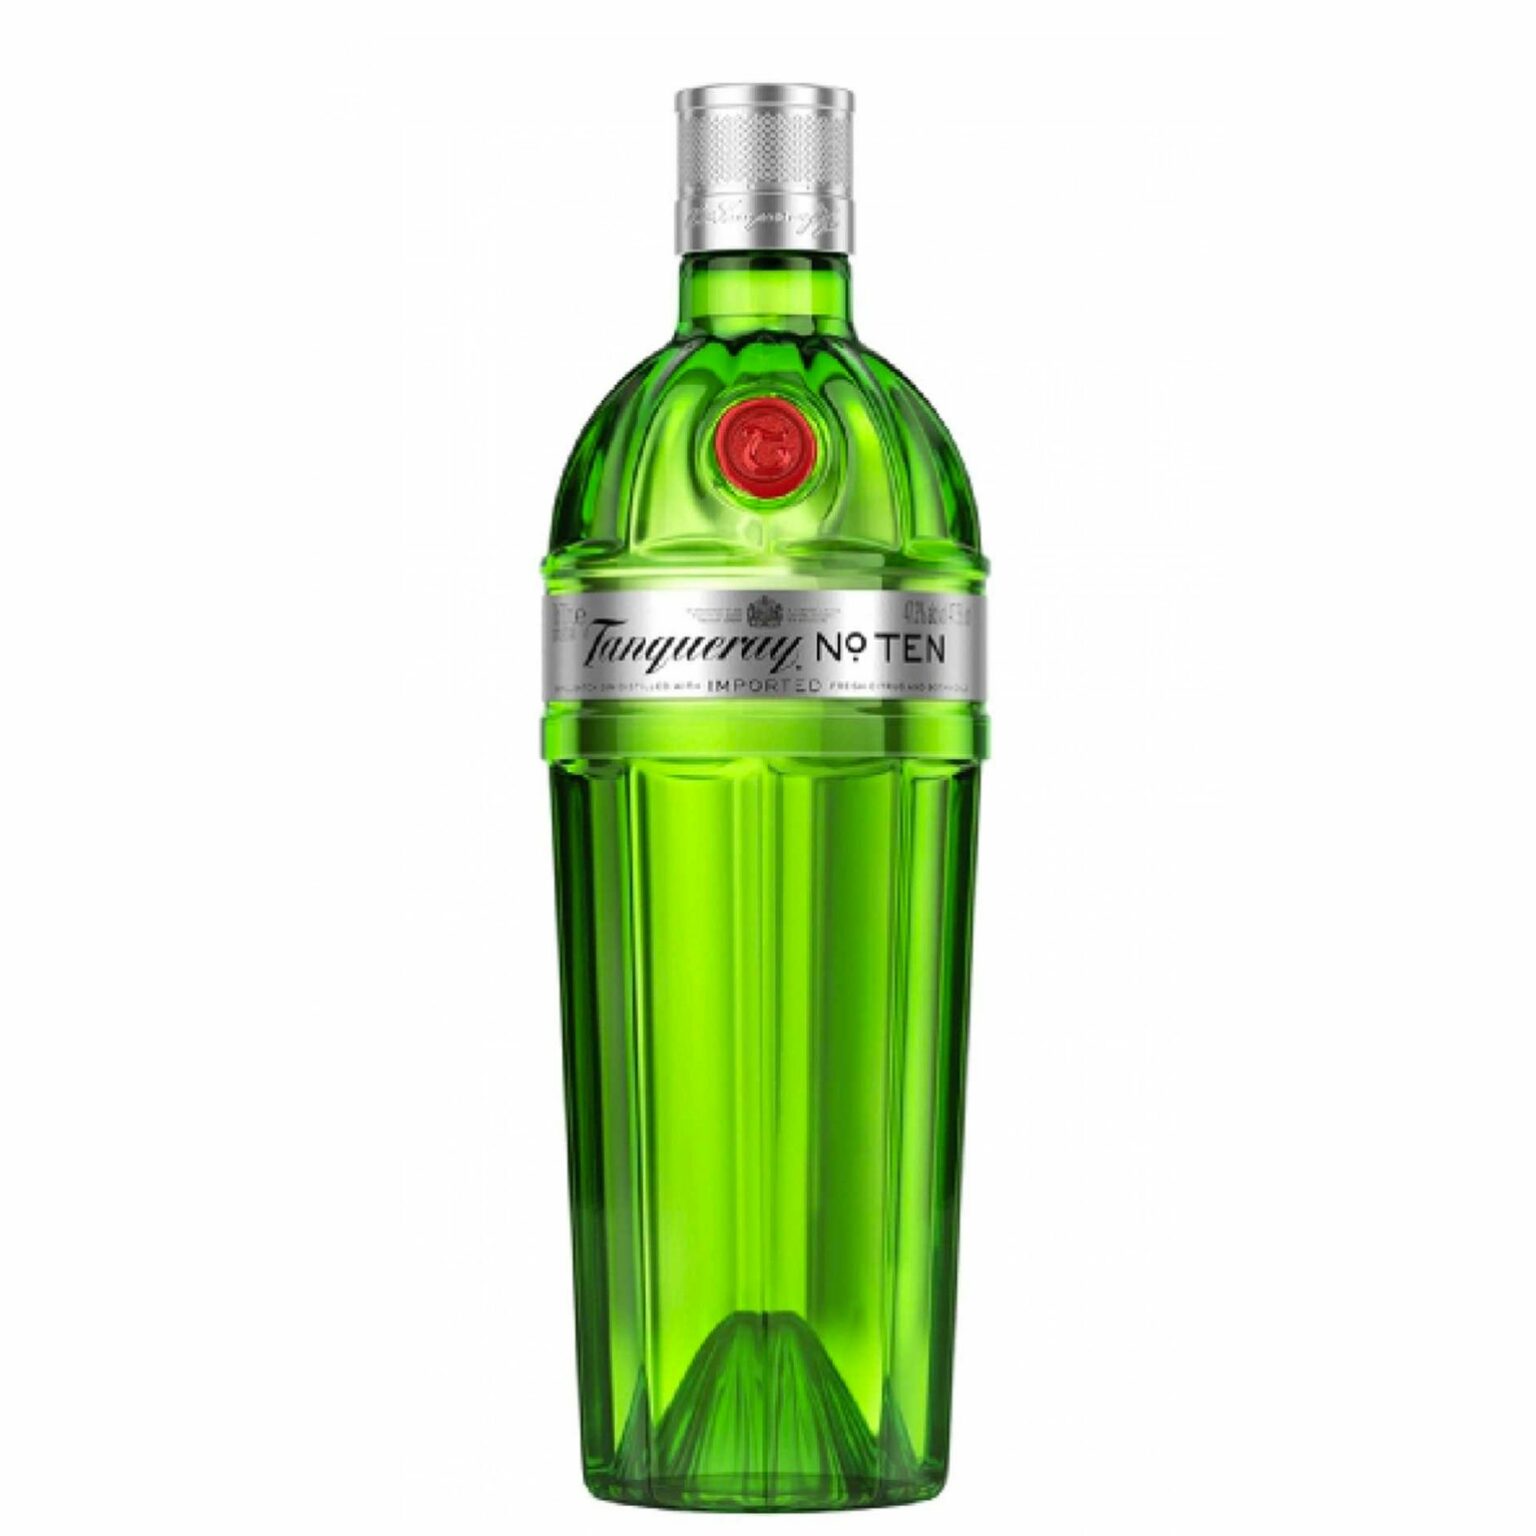 Il Gin "N° Ten" è prodotto ancora oggi con la stessa ricetta creata da Charles Tanqueray nel 1830.